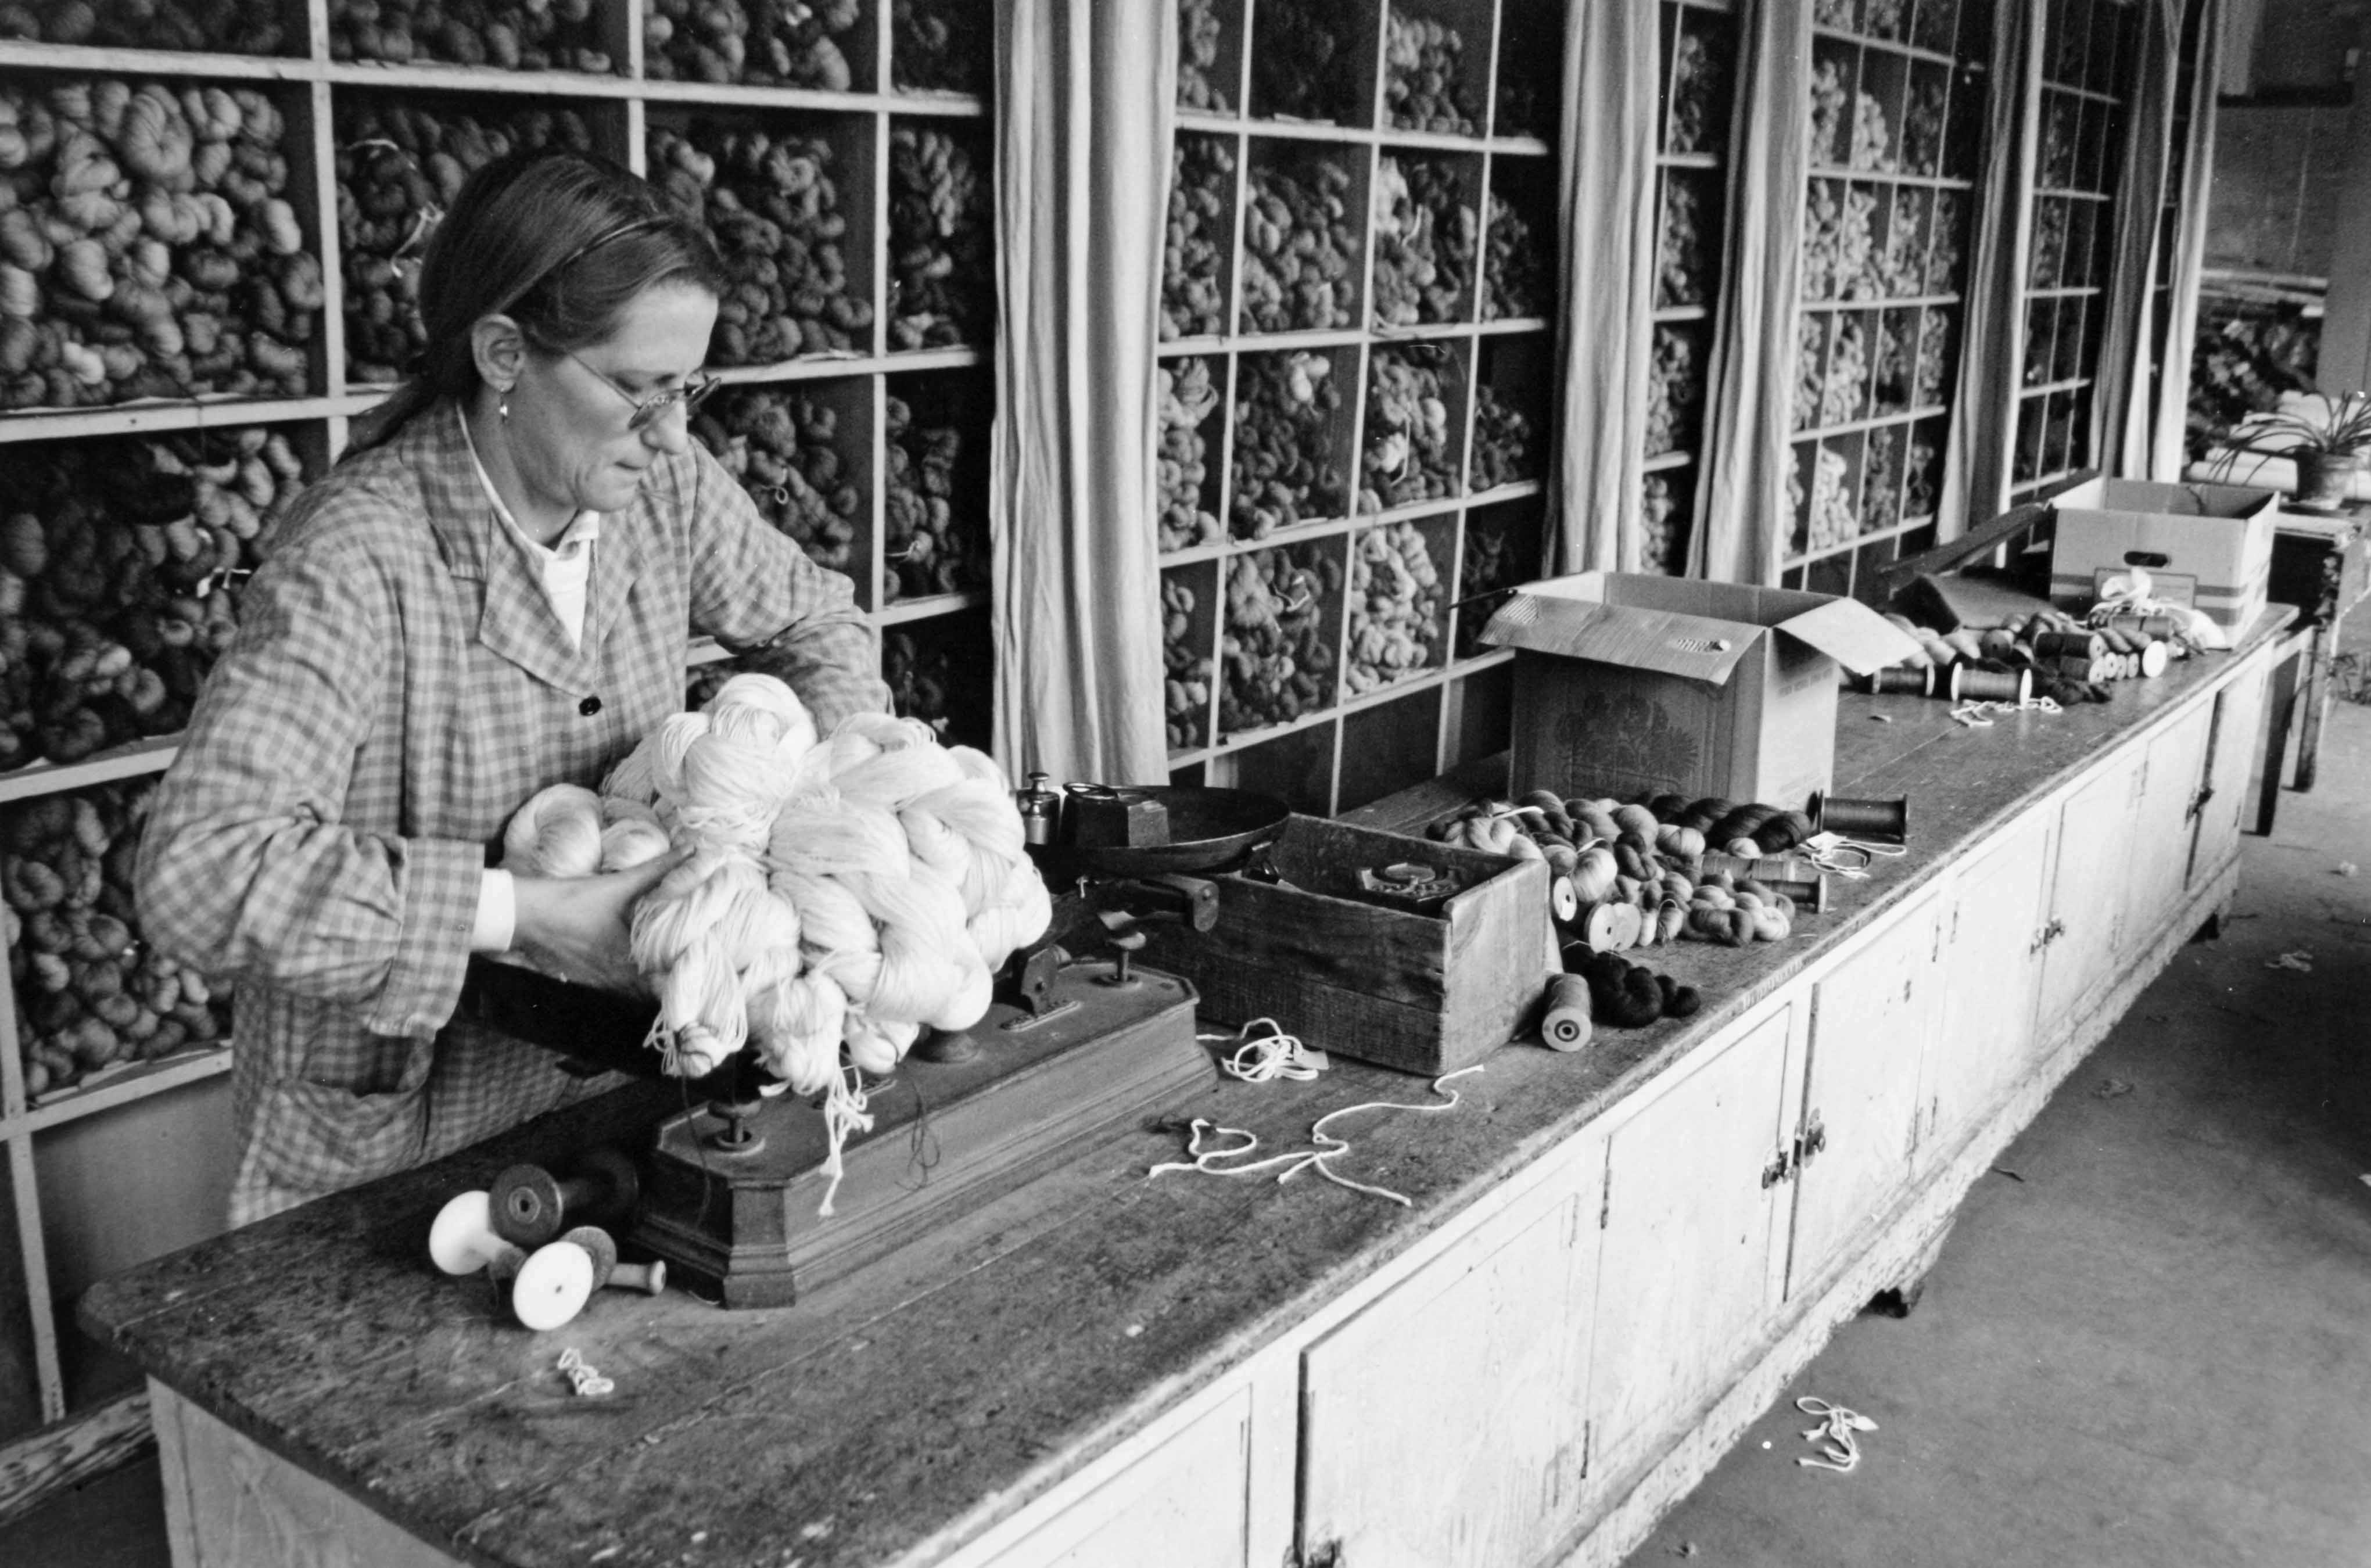 Le magasin des laines, avec une ouvrière au travail (reportage photographique de L. Yeghicheyan, 1992, Aubusson, Musée départemental de la Tapisserie)